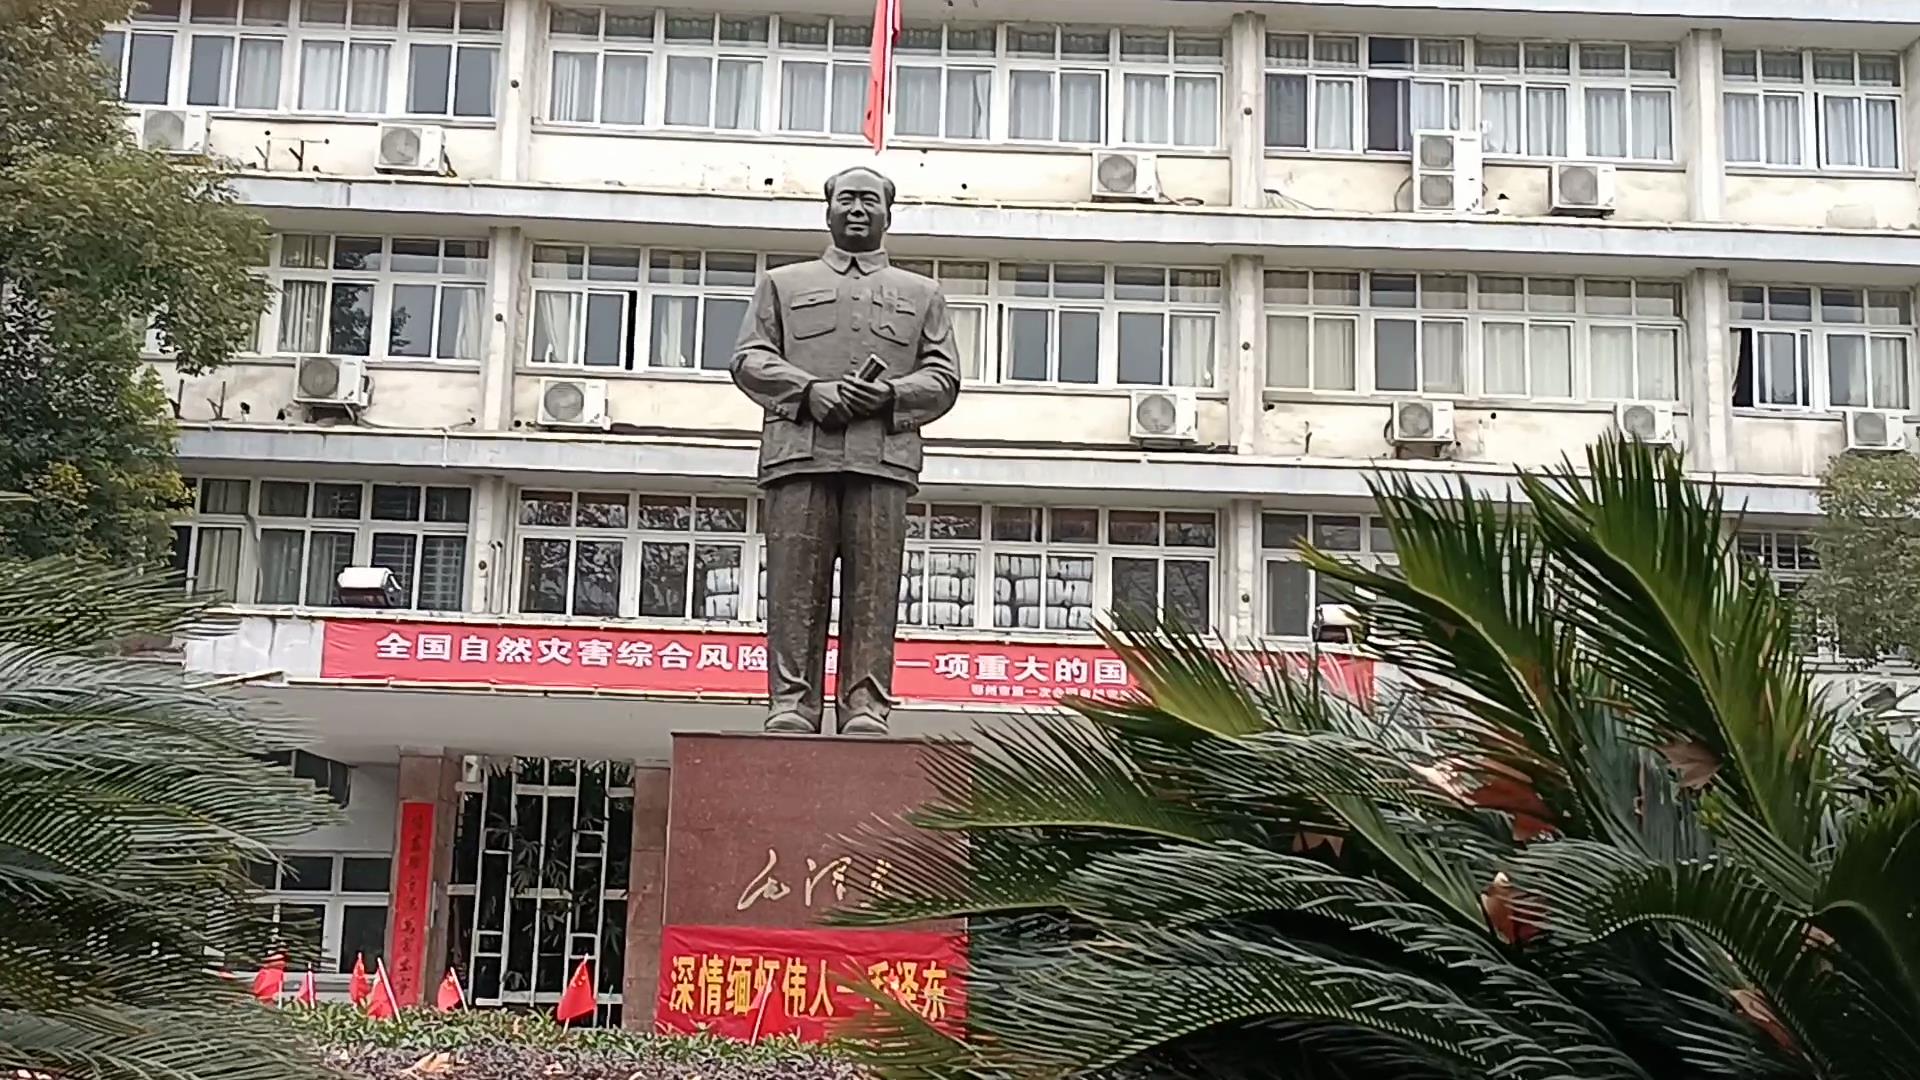 湖北鄂州市民前往市中心毛泽东主席铜像广场纪念毛泽东诞辰128周年